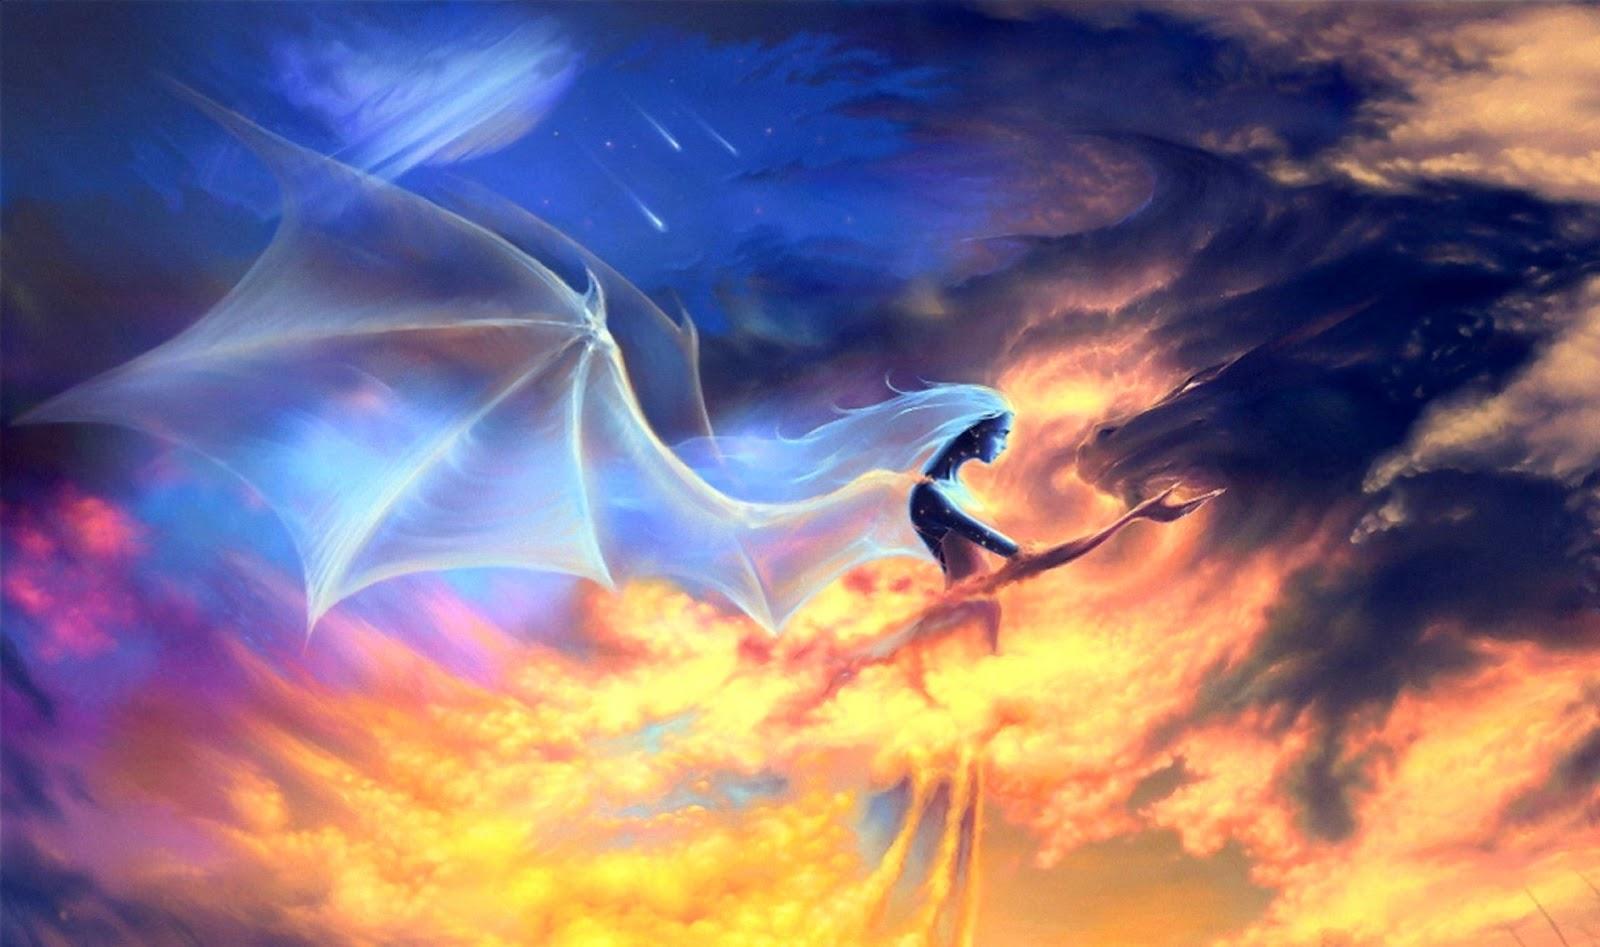 Dreamy Fantasy Angel Wings On Fire Wallpaper